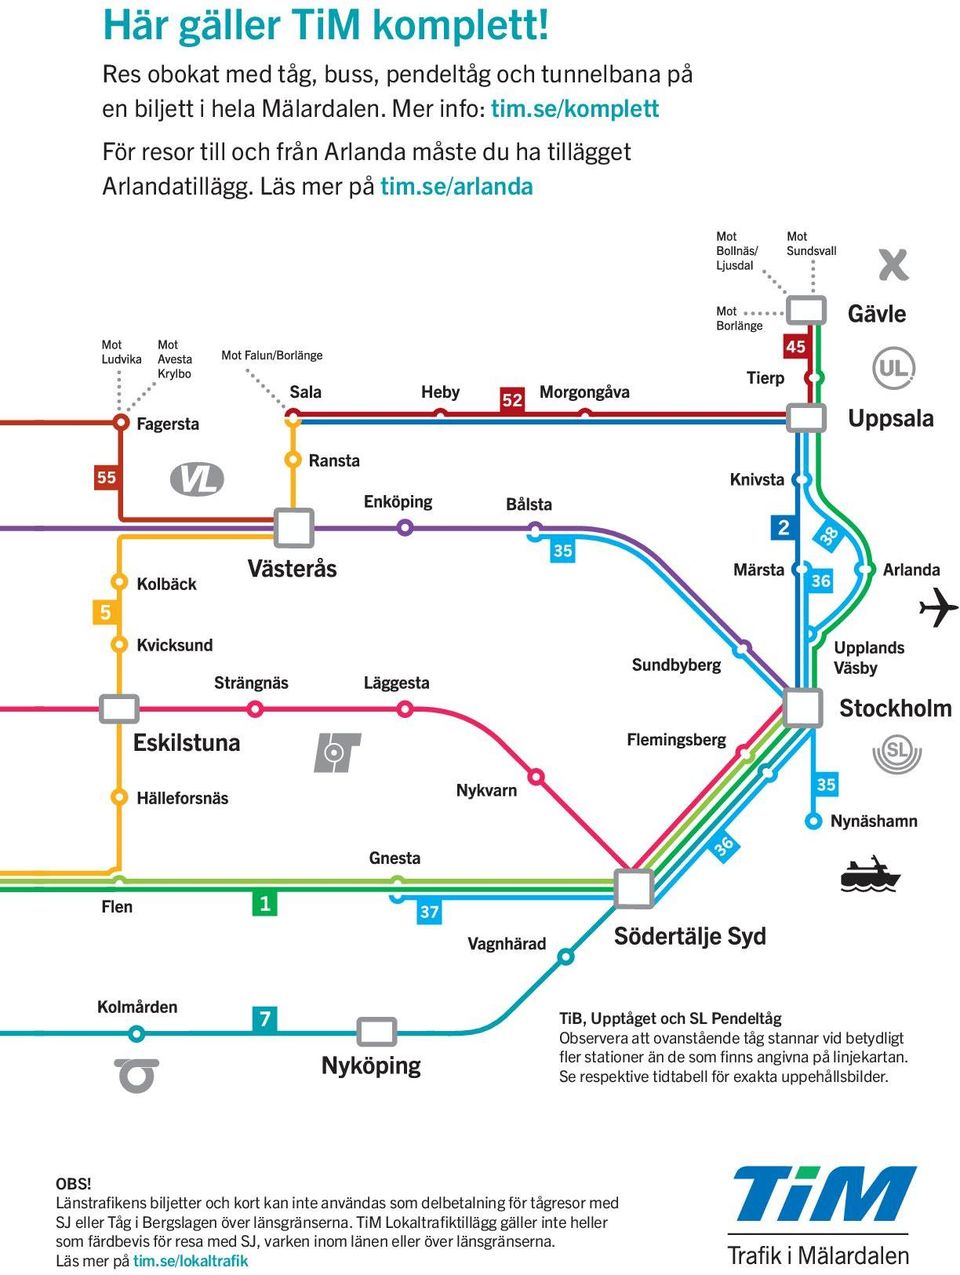 se/arlanda TiB, Upptåget och SL Pendeltåg Observera att ovanstående tåg stannar vid betydligt fler stationer än de som finns angivna på linjekartan.